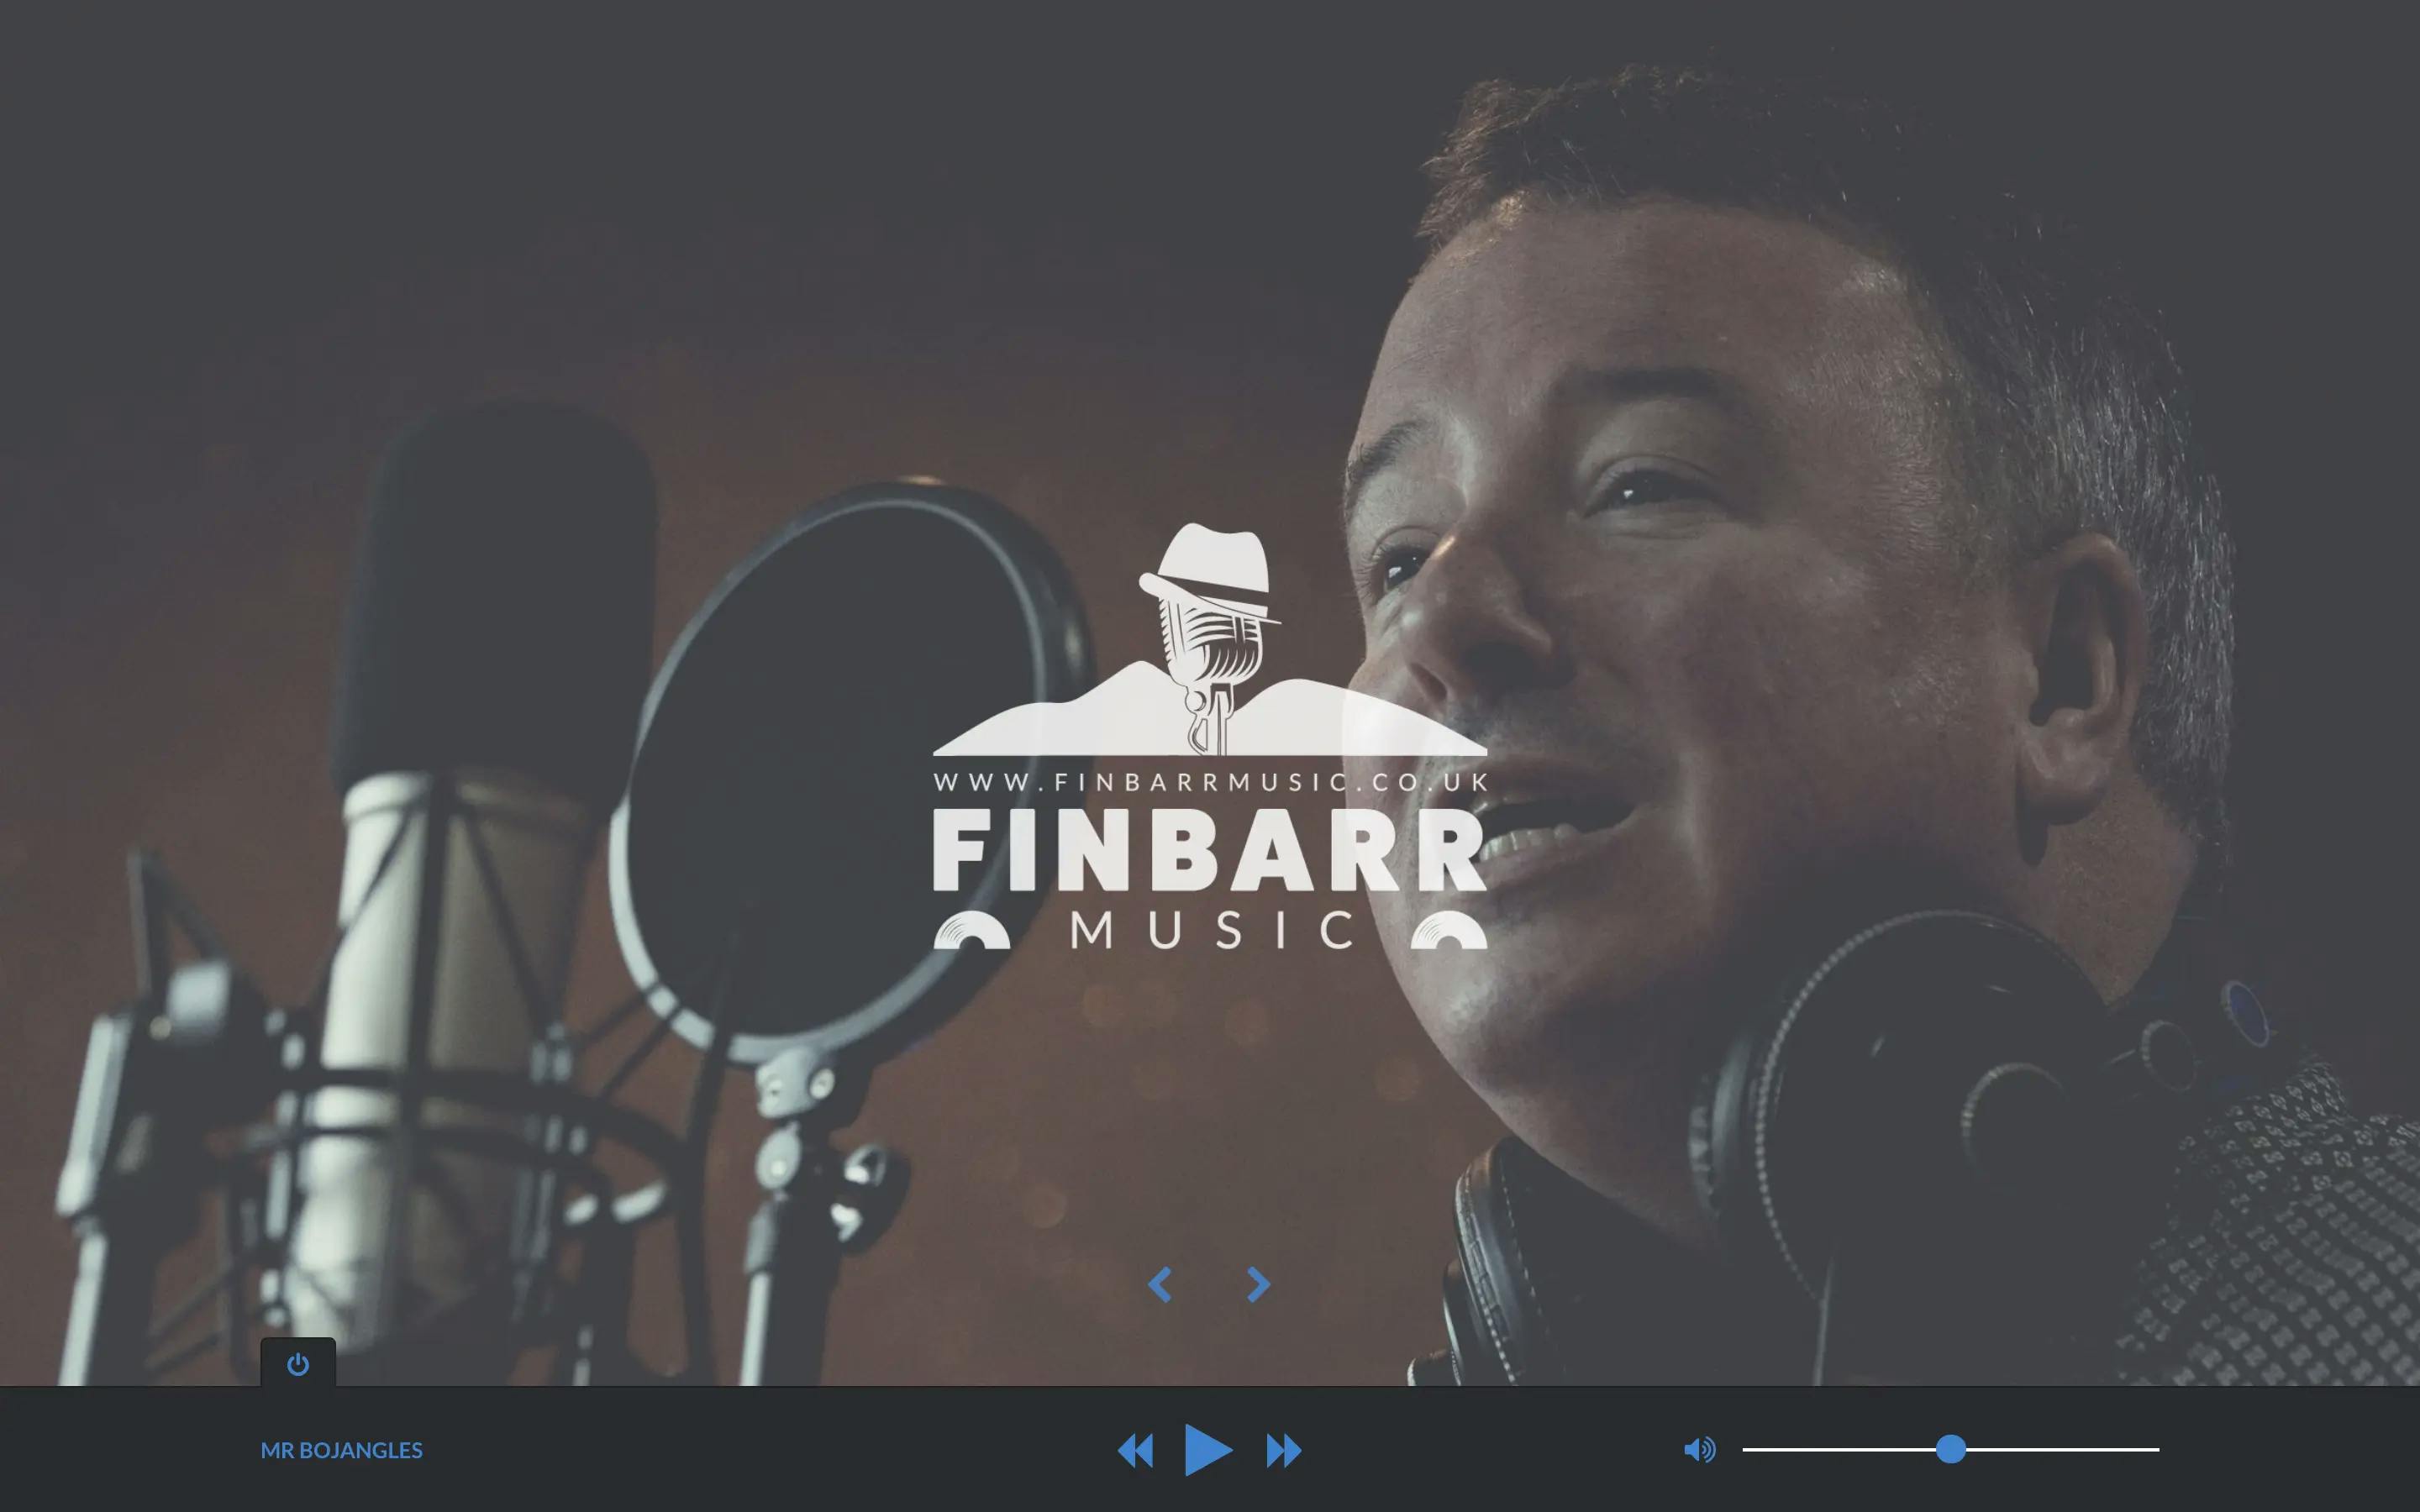 Finbarr Music